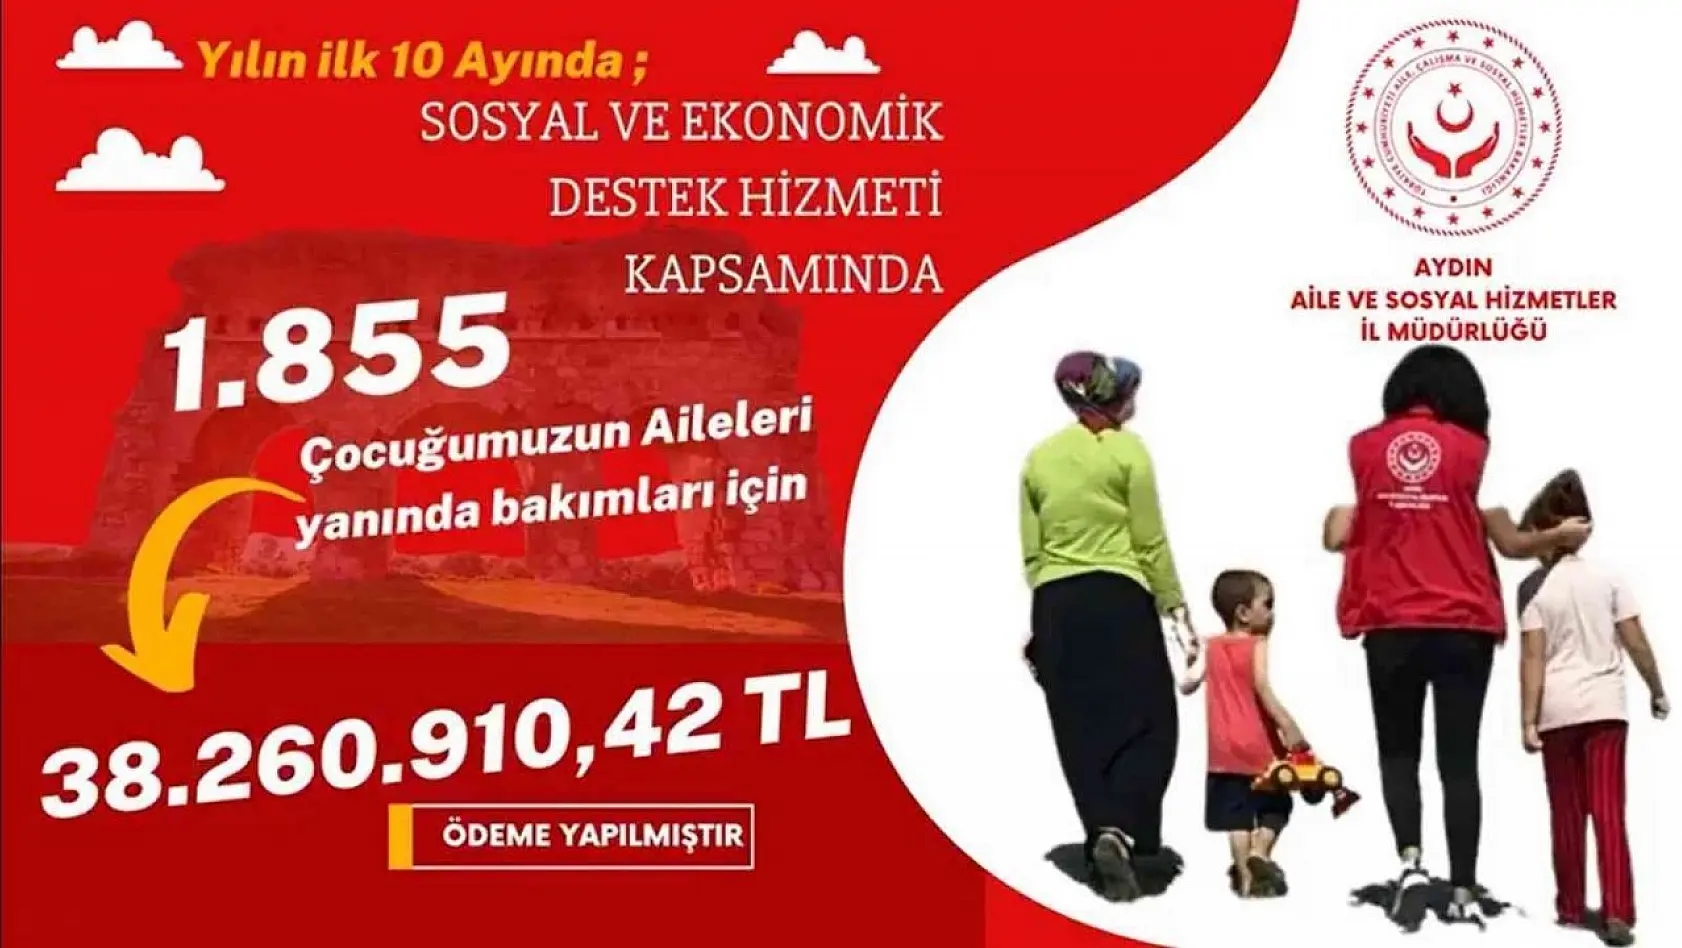 Aydın'da 38 milyon 260 bin 910 TL'lik SED yardımı yapıldı